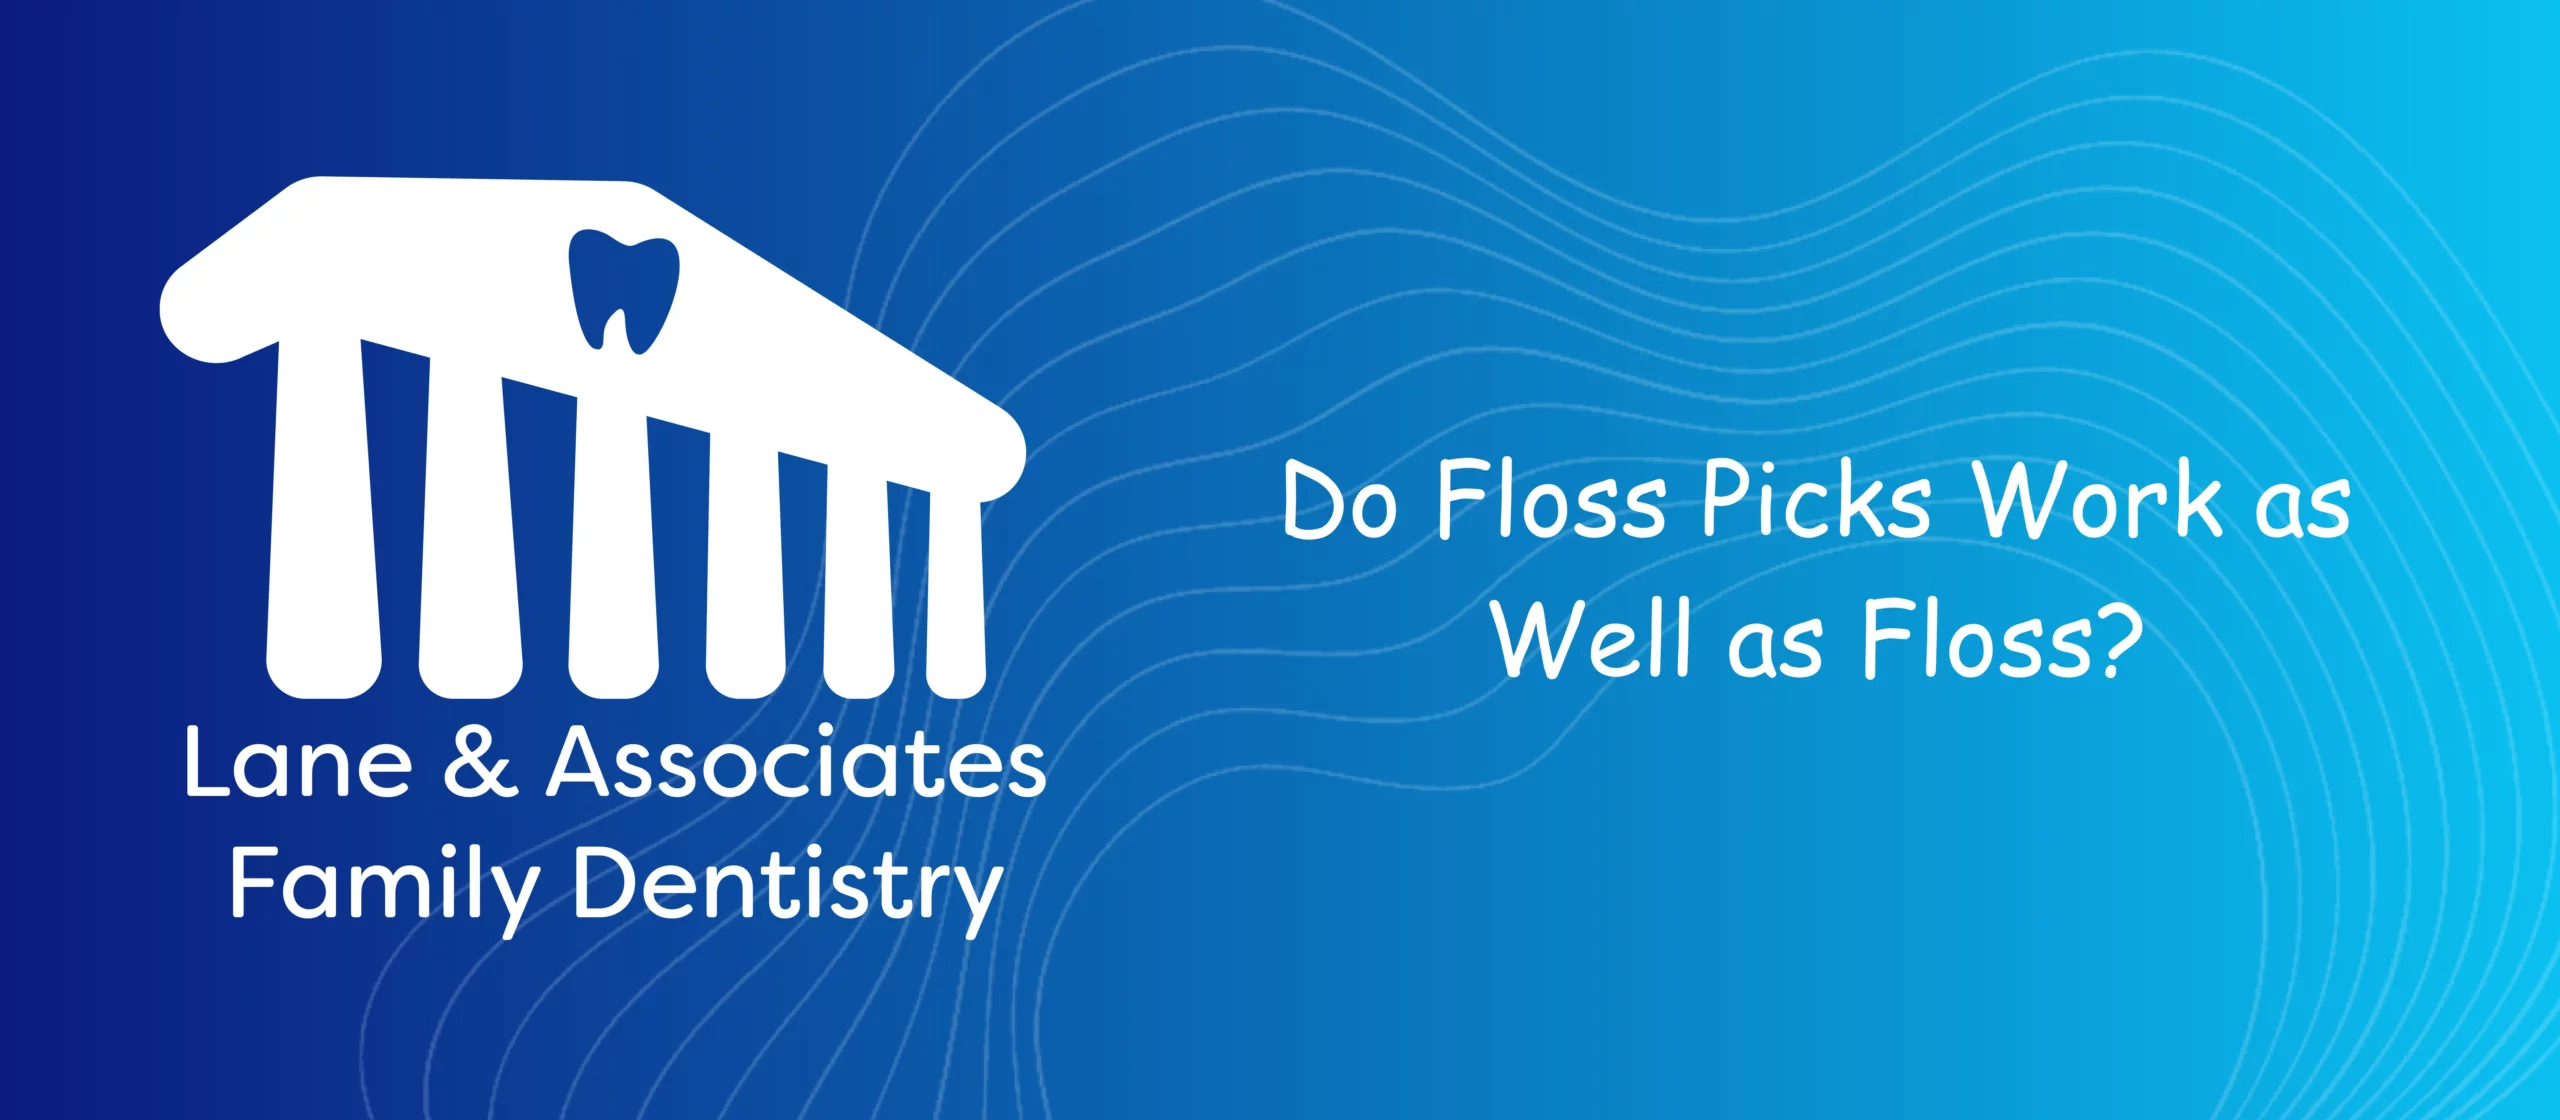 Do Floss Picks work as well as Floss?